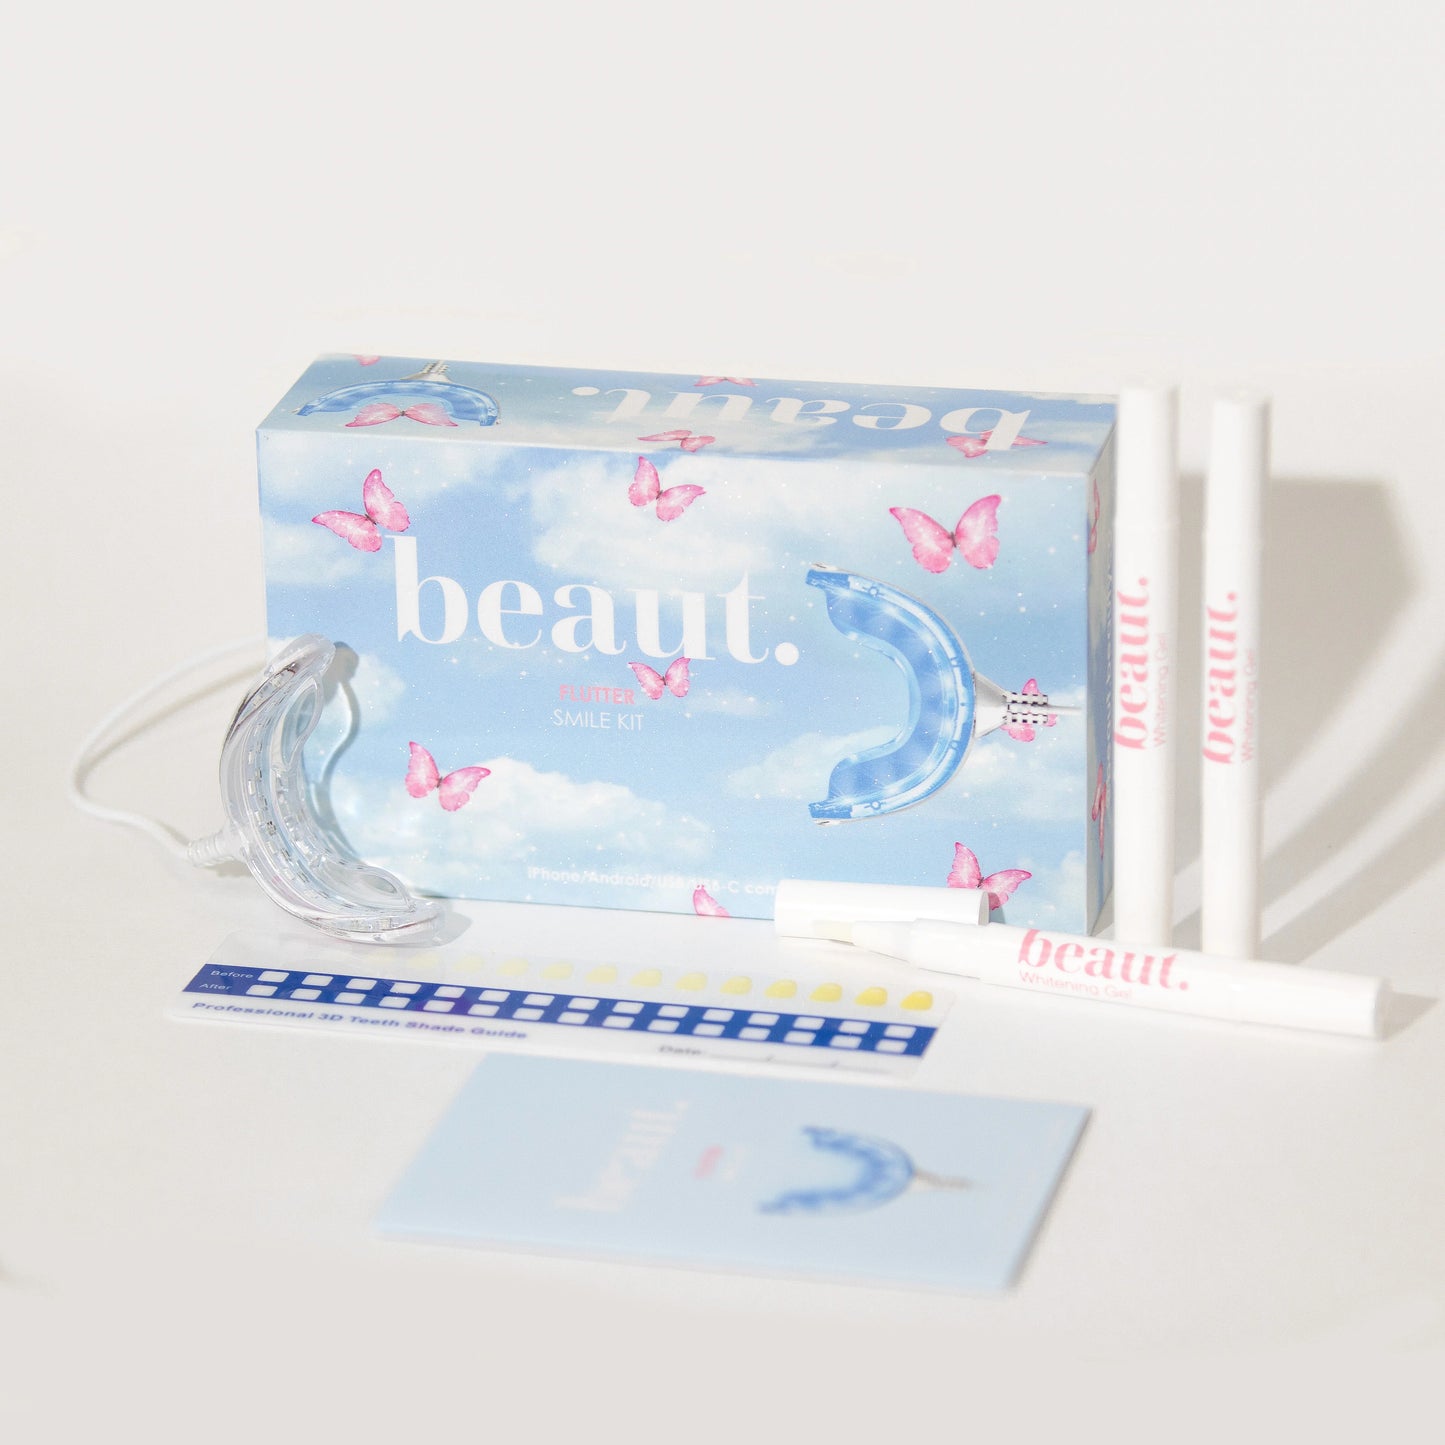 Flutter Smile Kit by beaut.